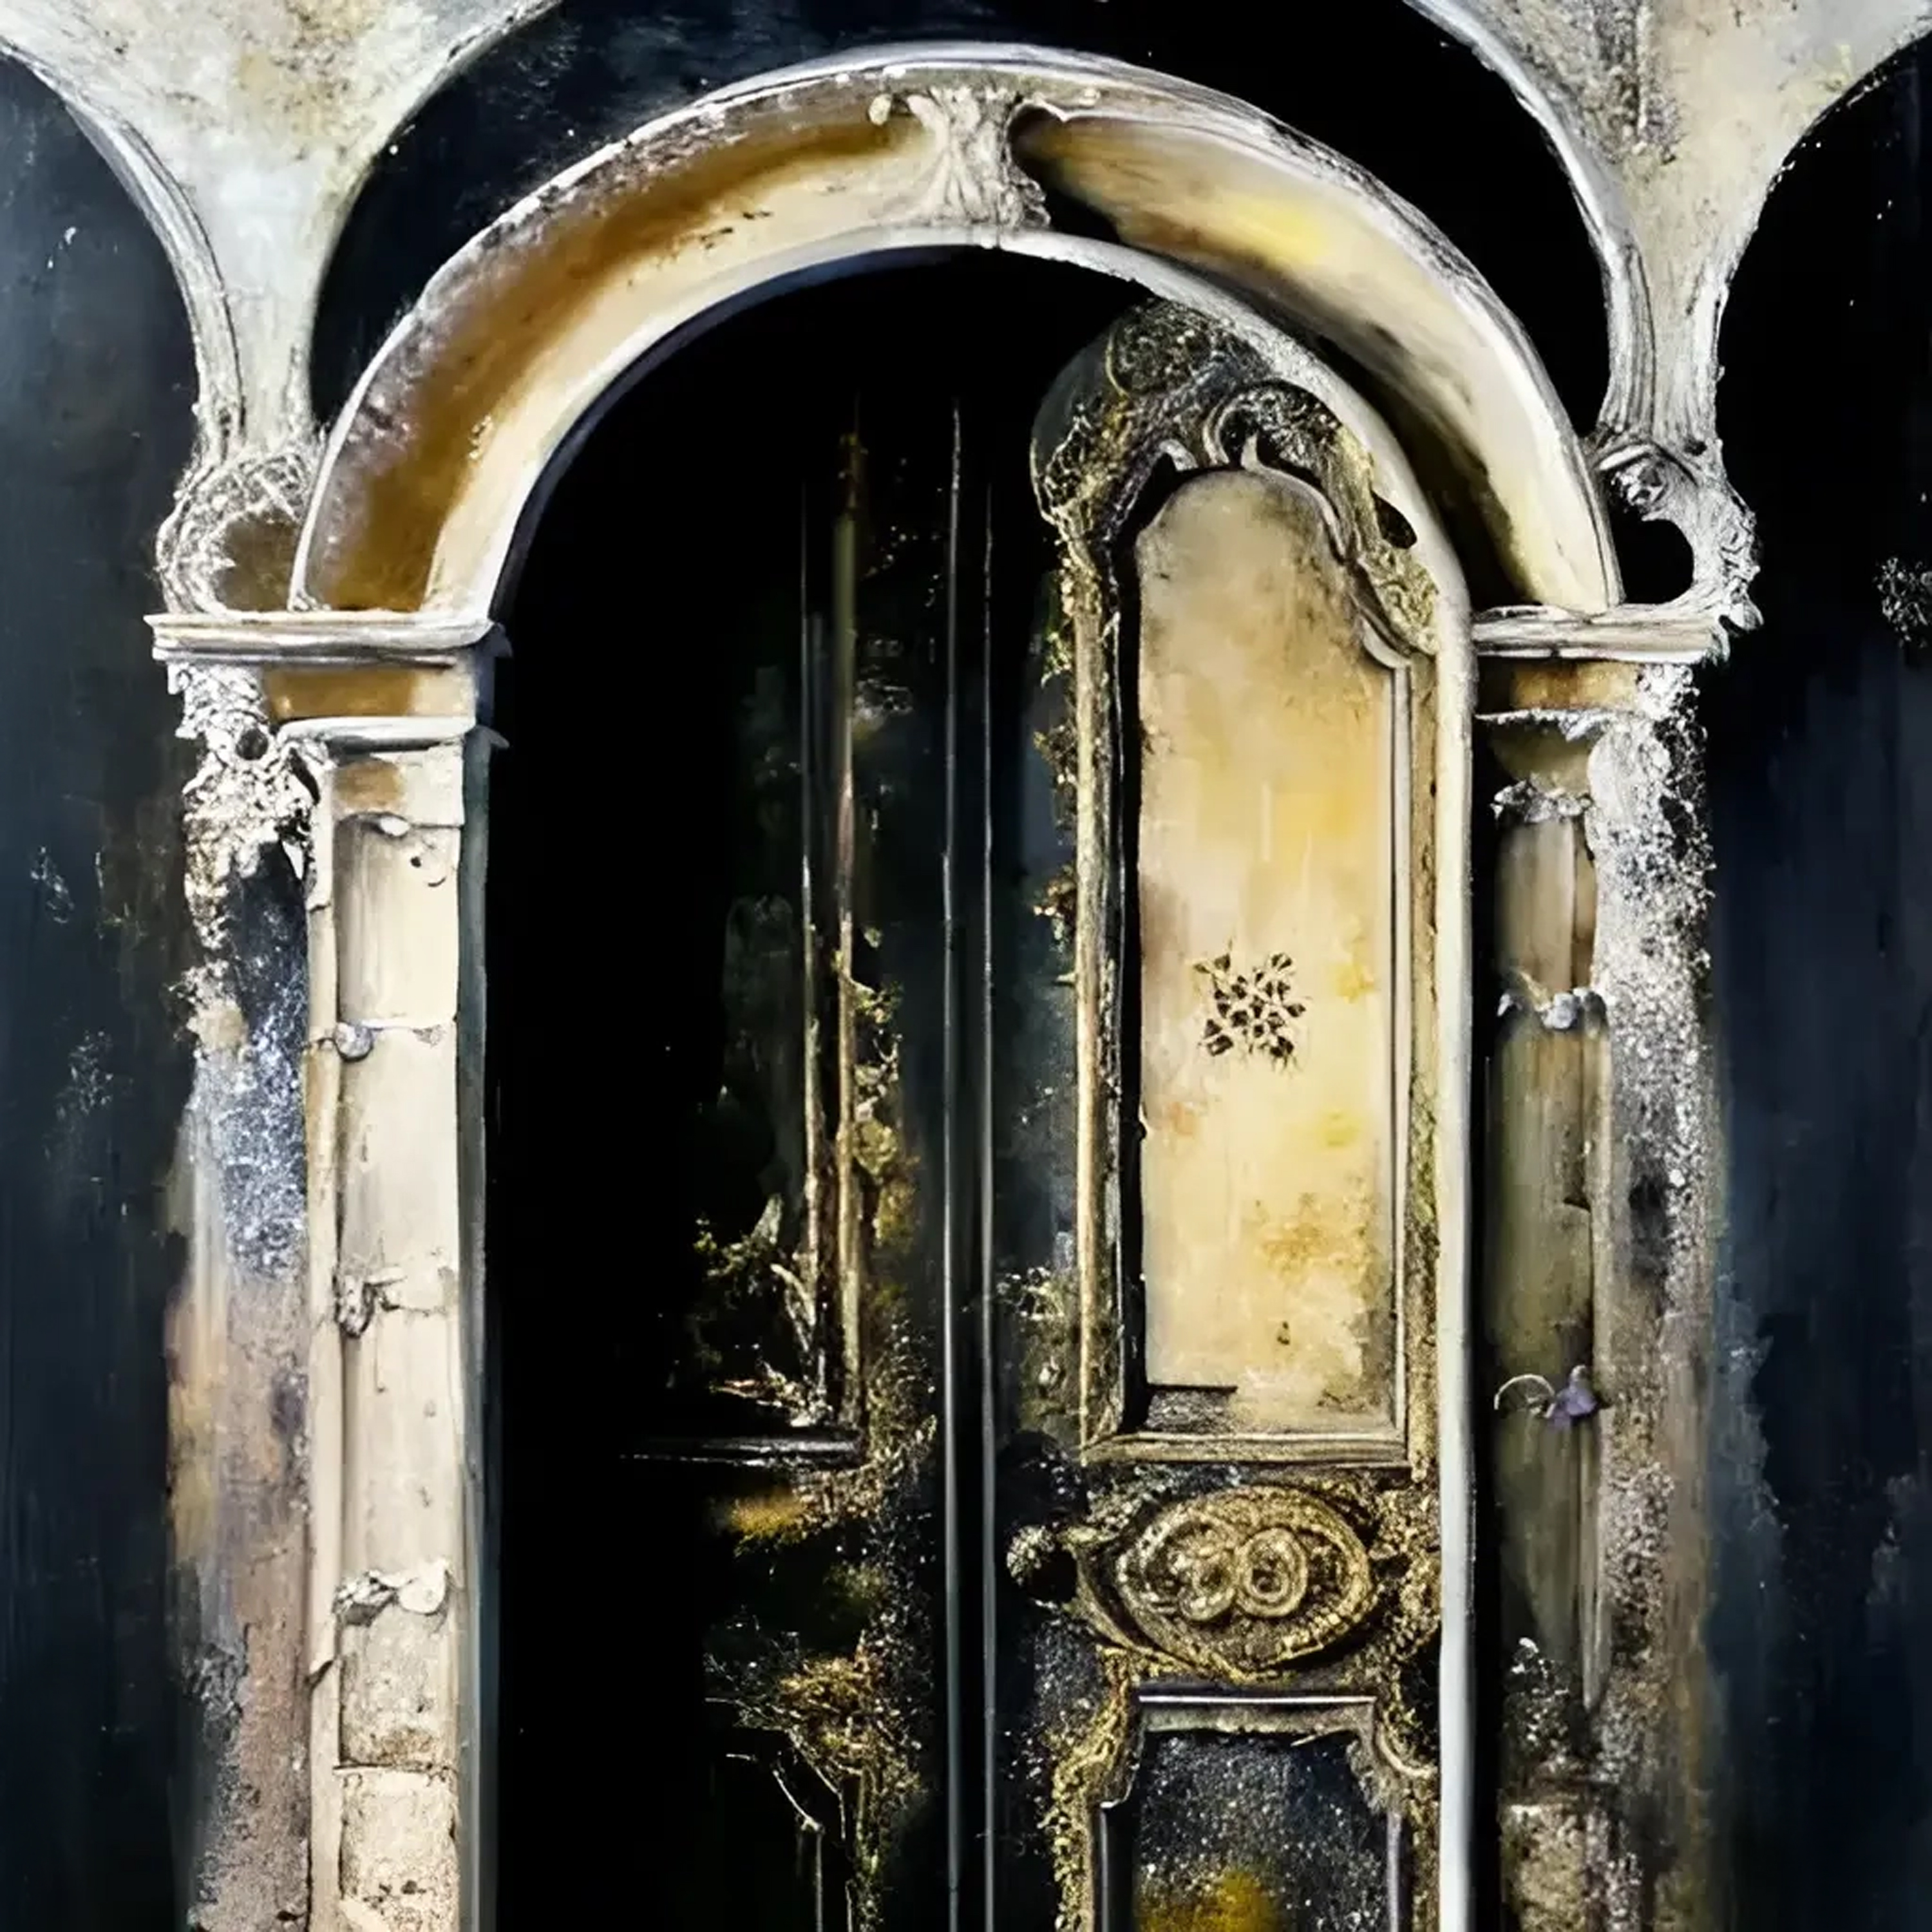 XXIV - The door of XNLKX